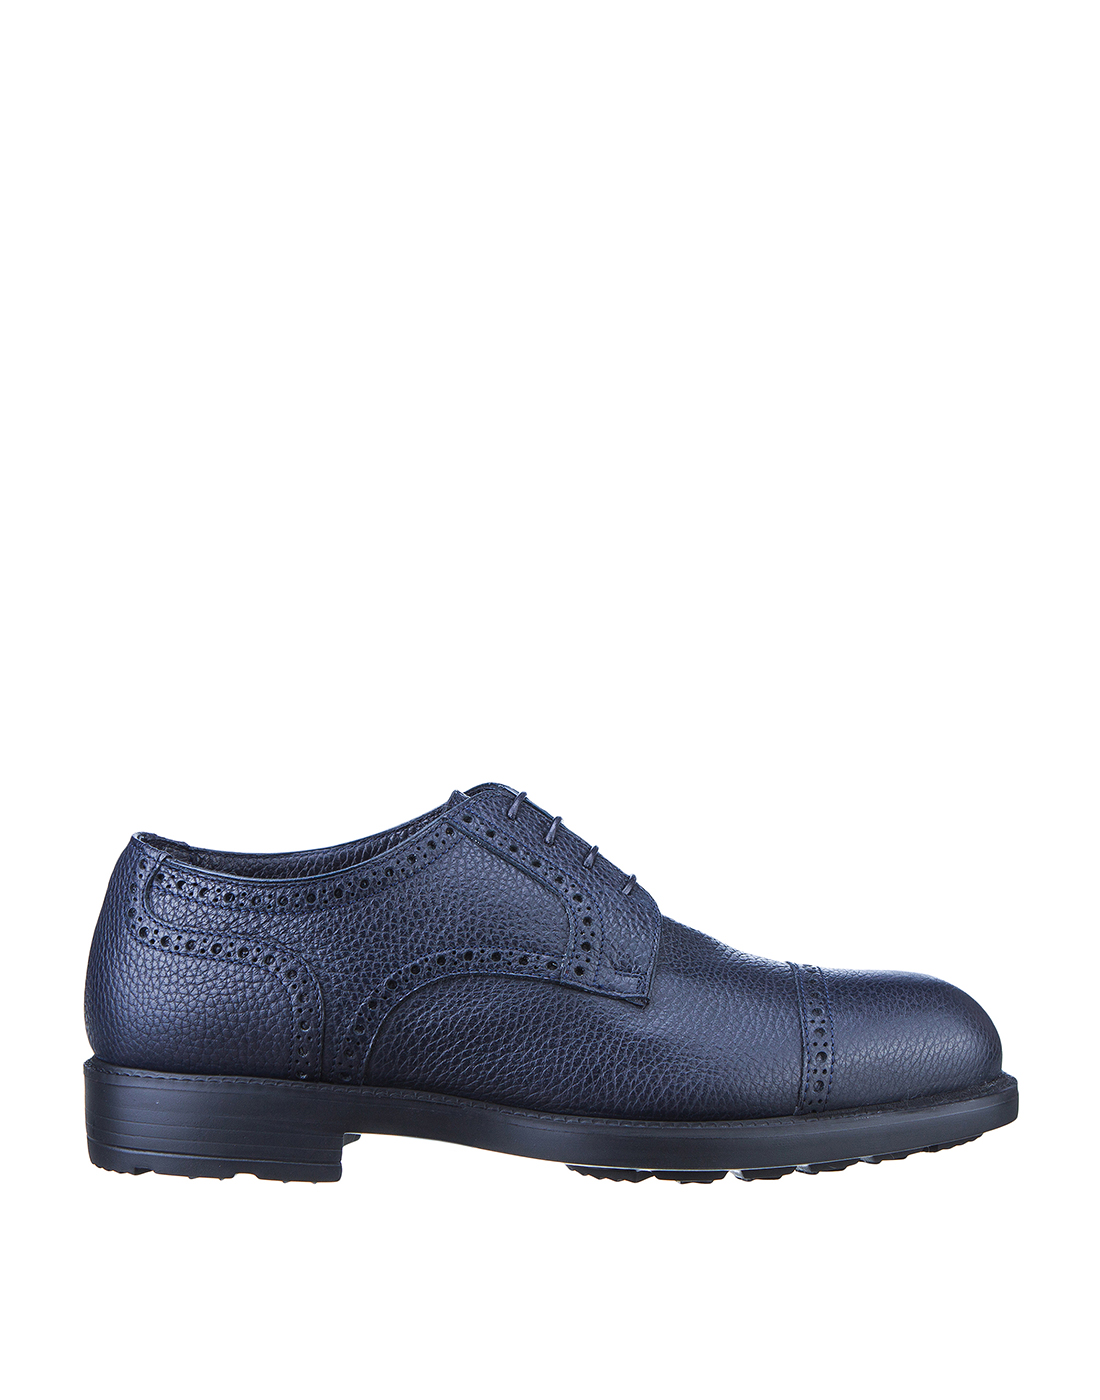 Туфли синие мужские Moreschi S43251-1